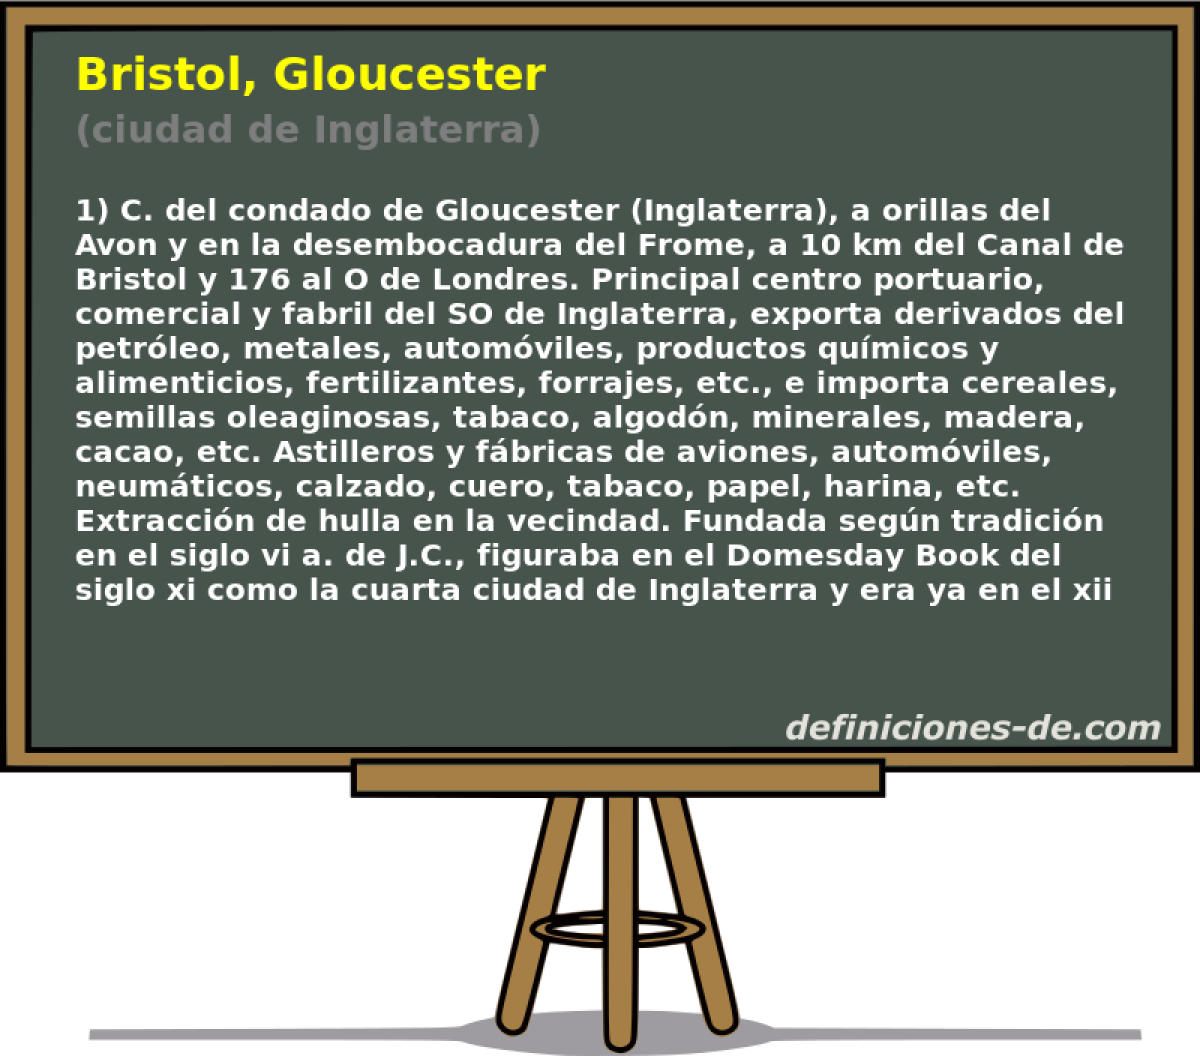 Bristol, Gloucester (ciudad de Inglaterra)